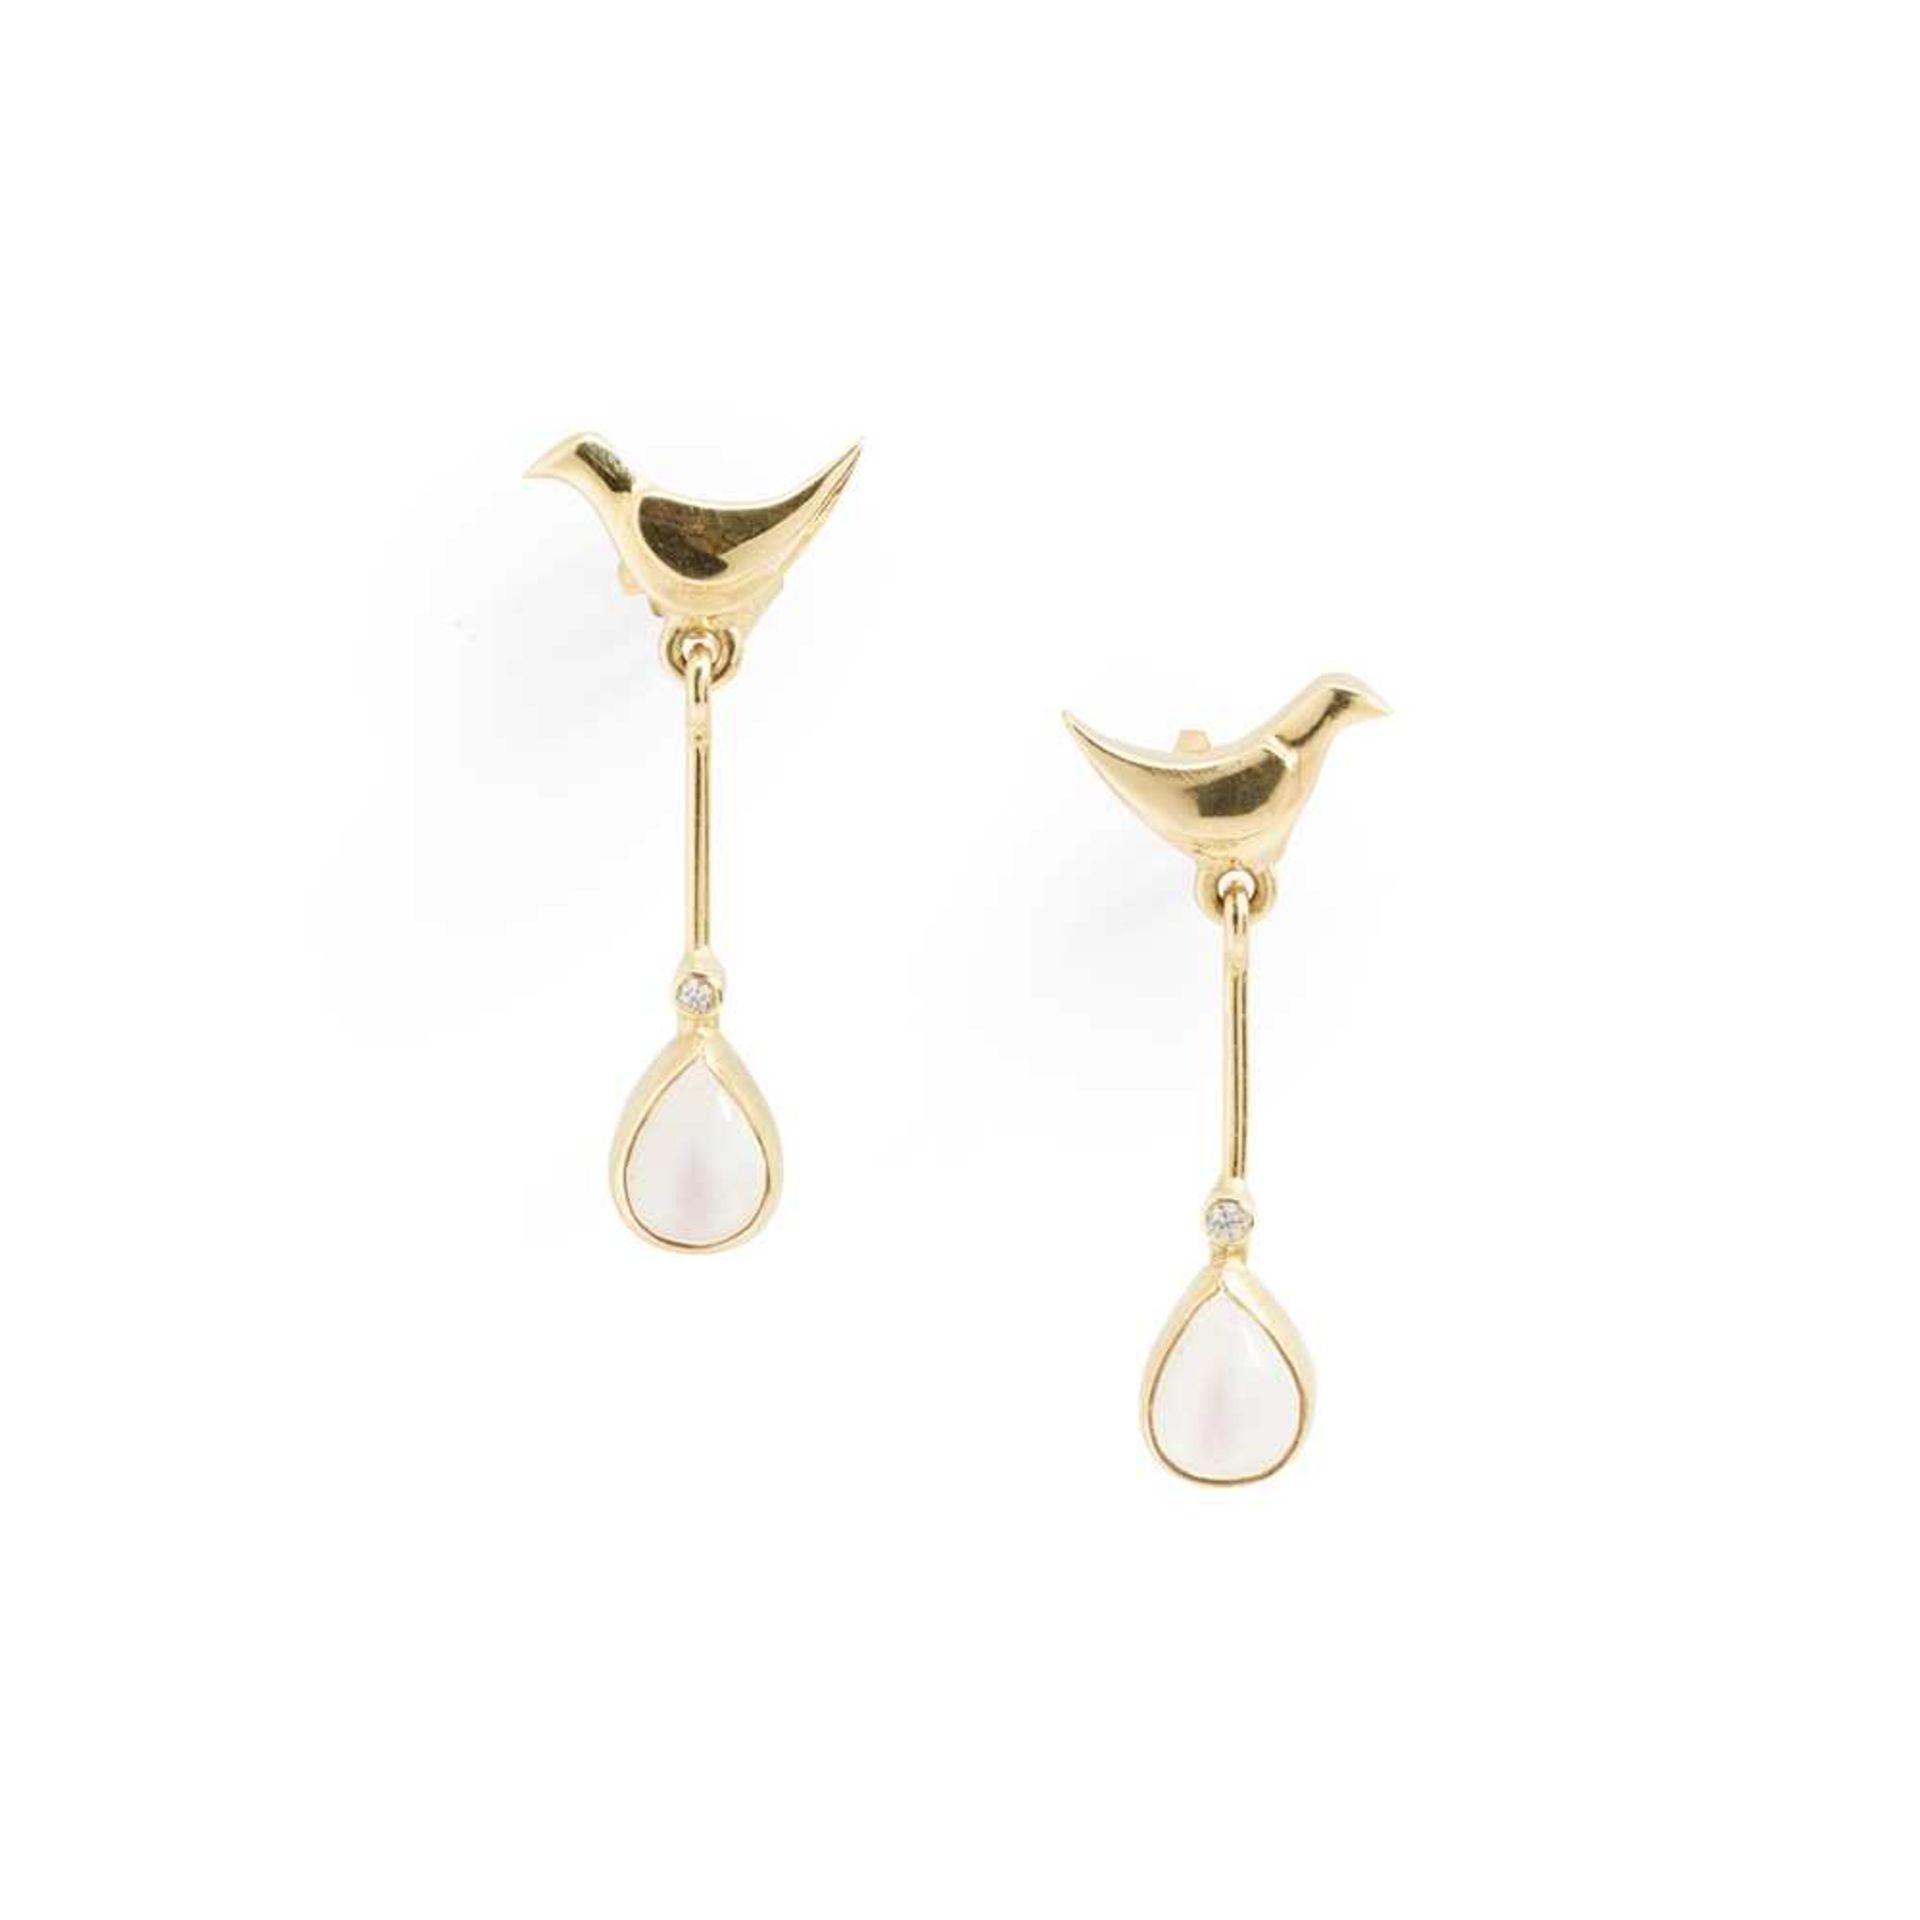 A pair of moonstone earrings, by Graham Stewart